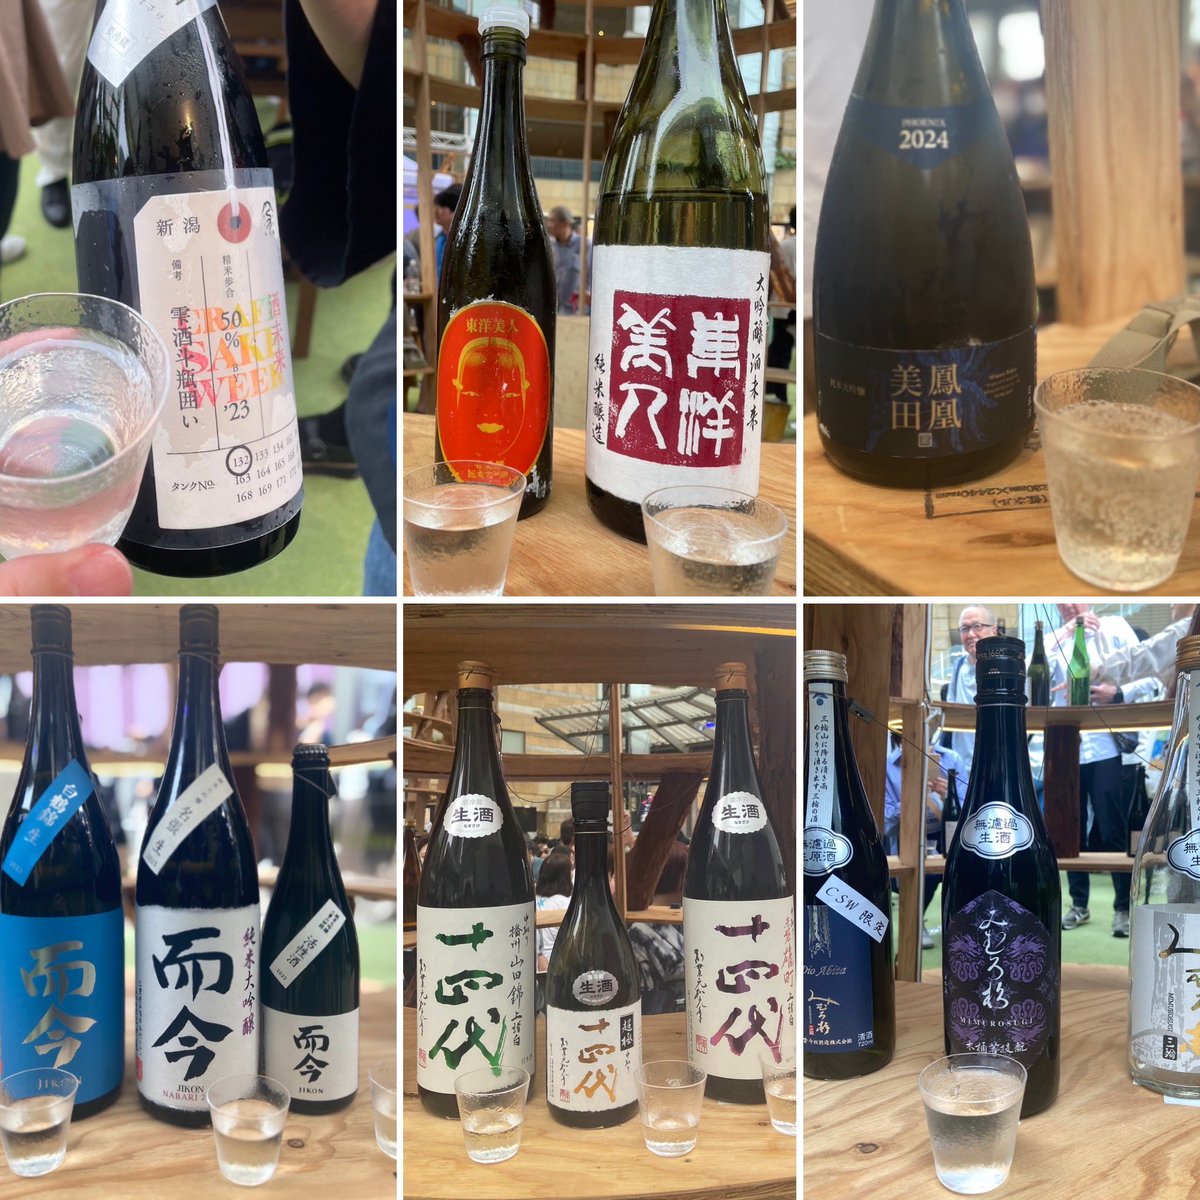 撤収！最終日たくさん飲めてまんぞく✨
酒未来を使った日本酒はやっぱ美味しい😋
#csw2024